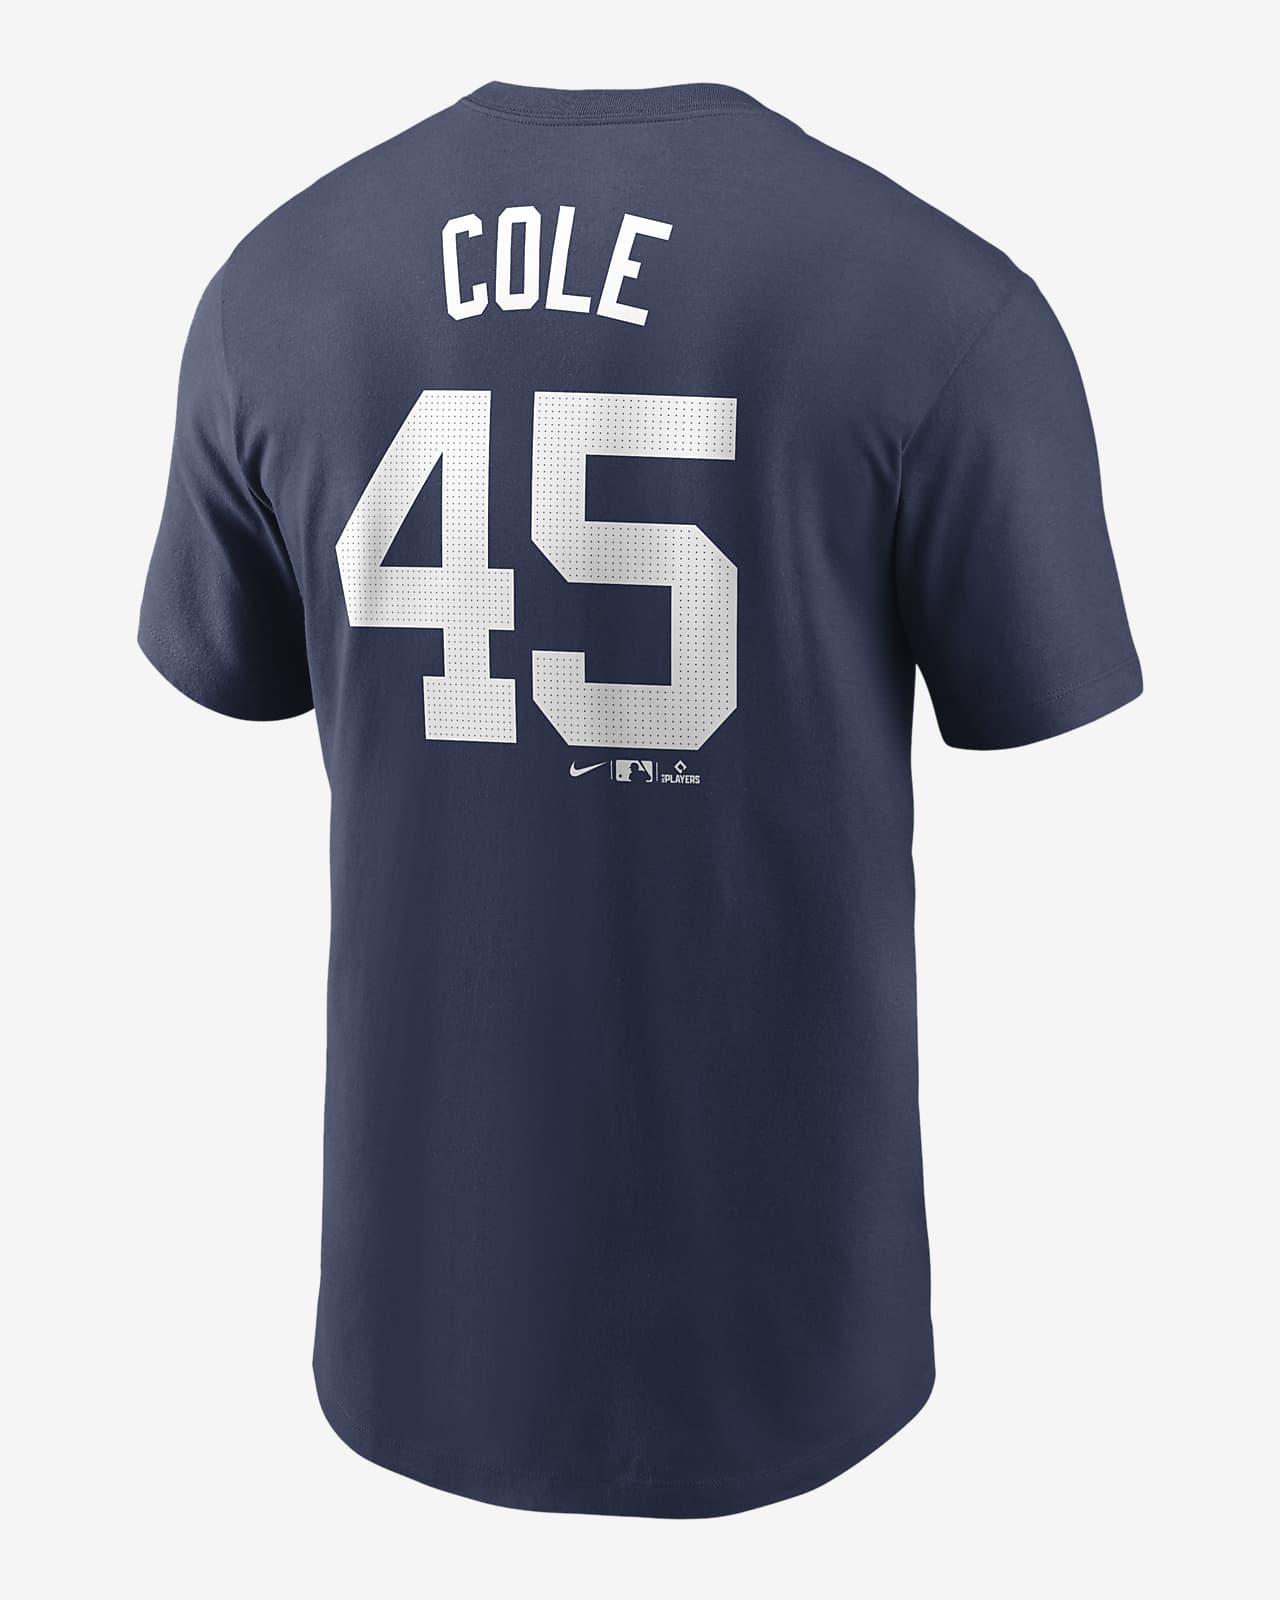 Gerrit Cole New York Yankees Fuse Men's Nike MLB T-Shirt